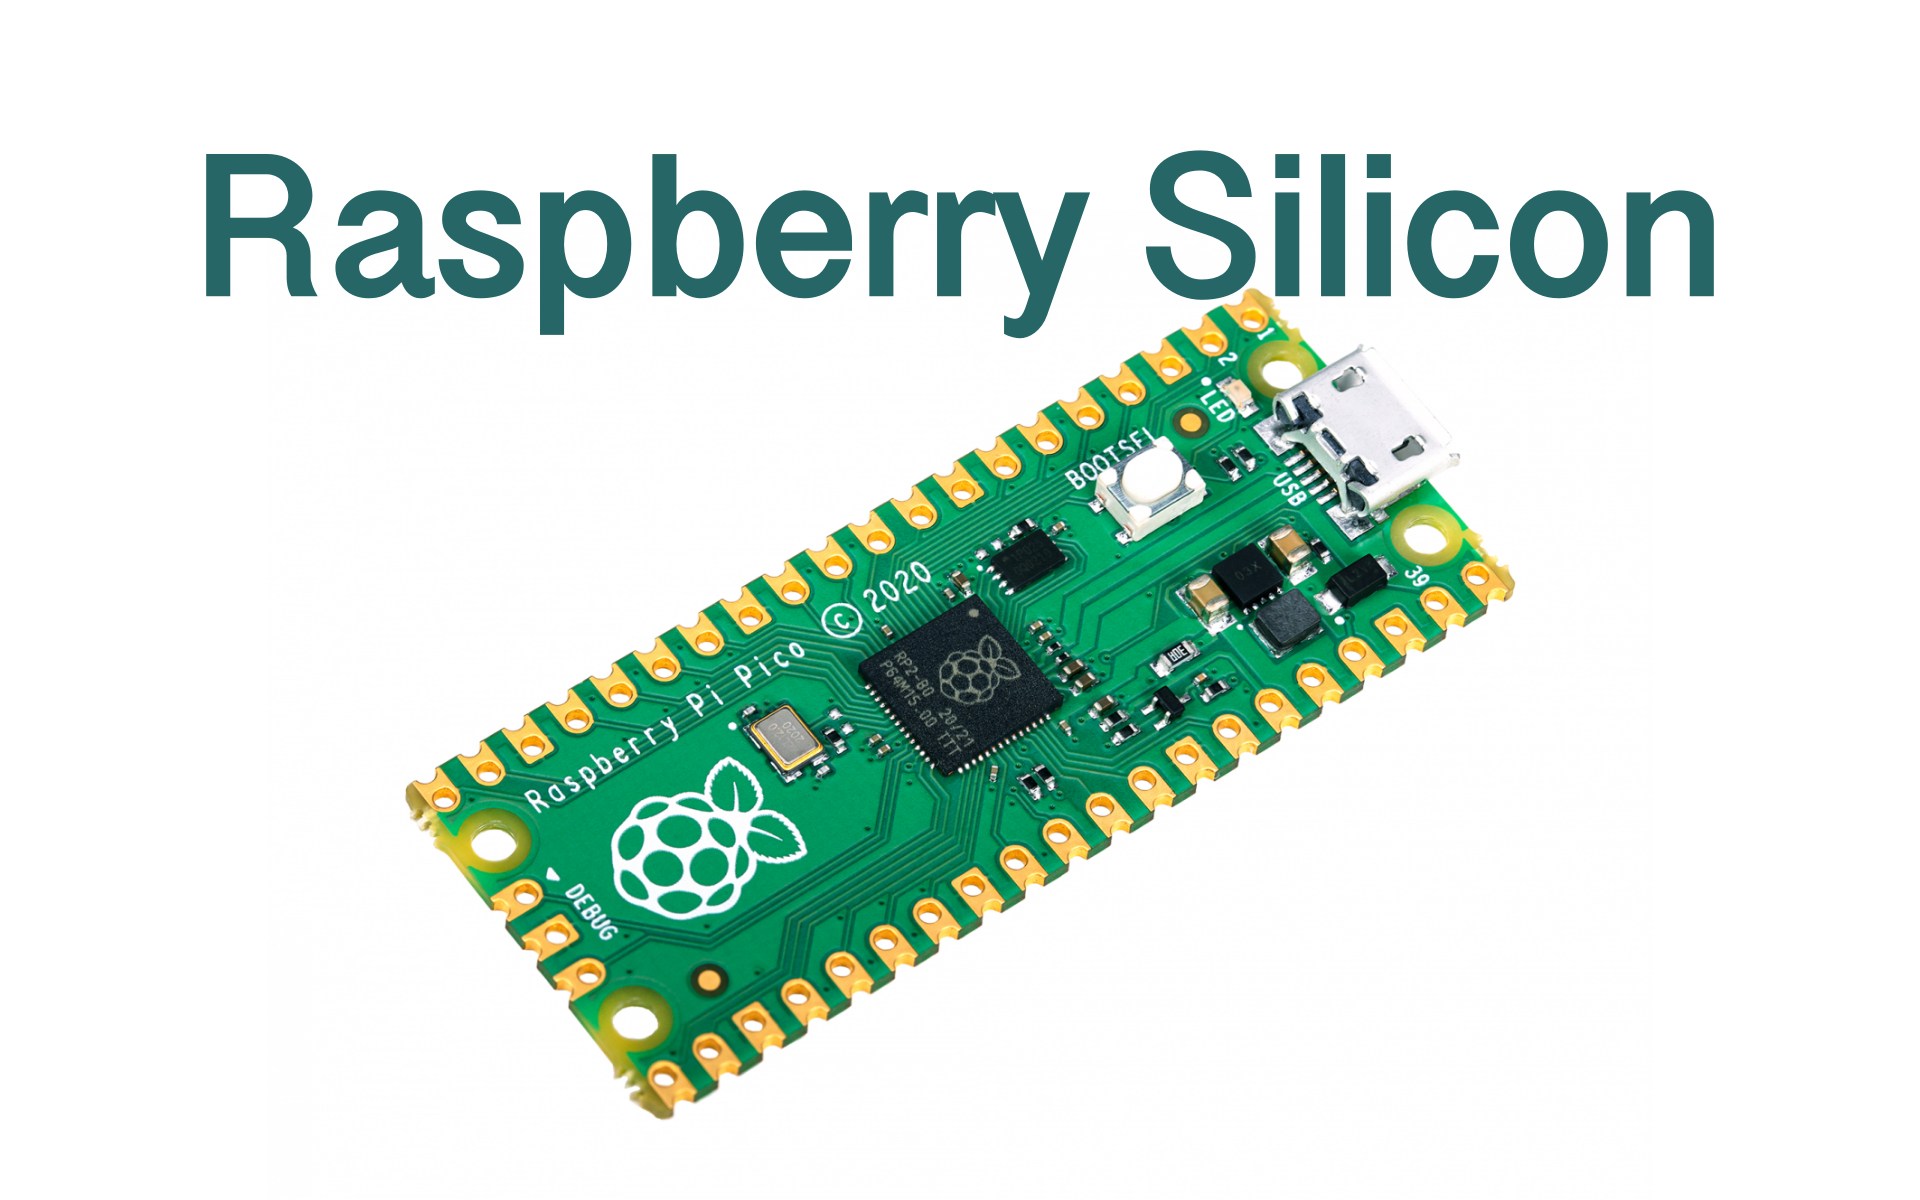 Raspberry Pi Foundation Release Their Own Silicon, the Raspberry Pi Pico